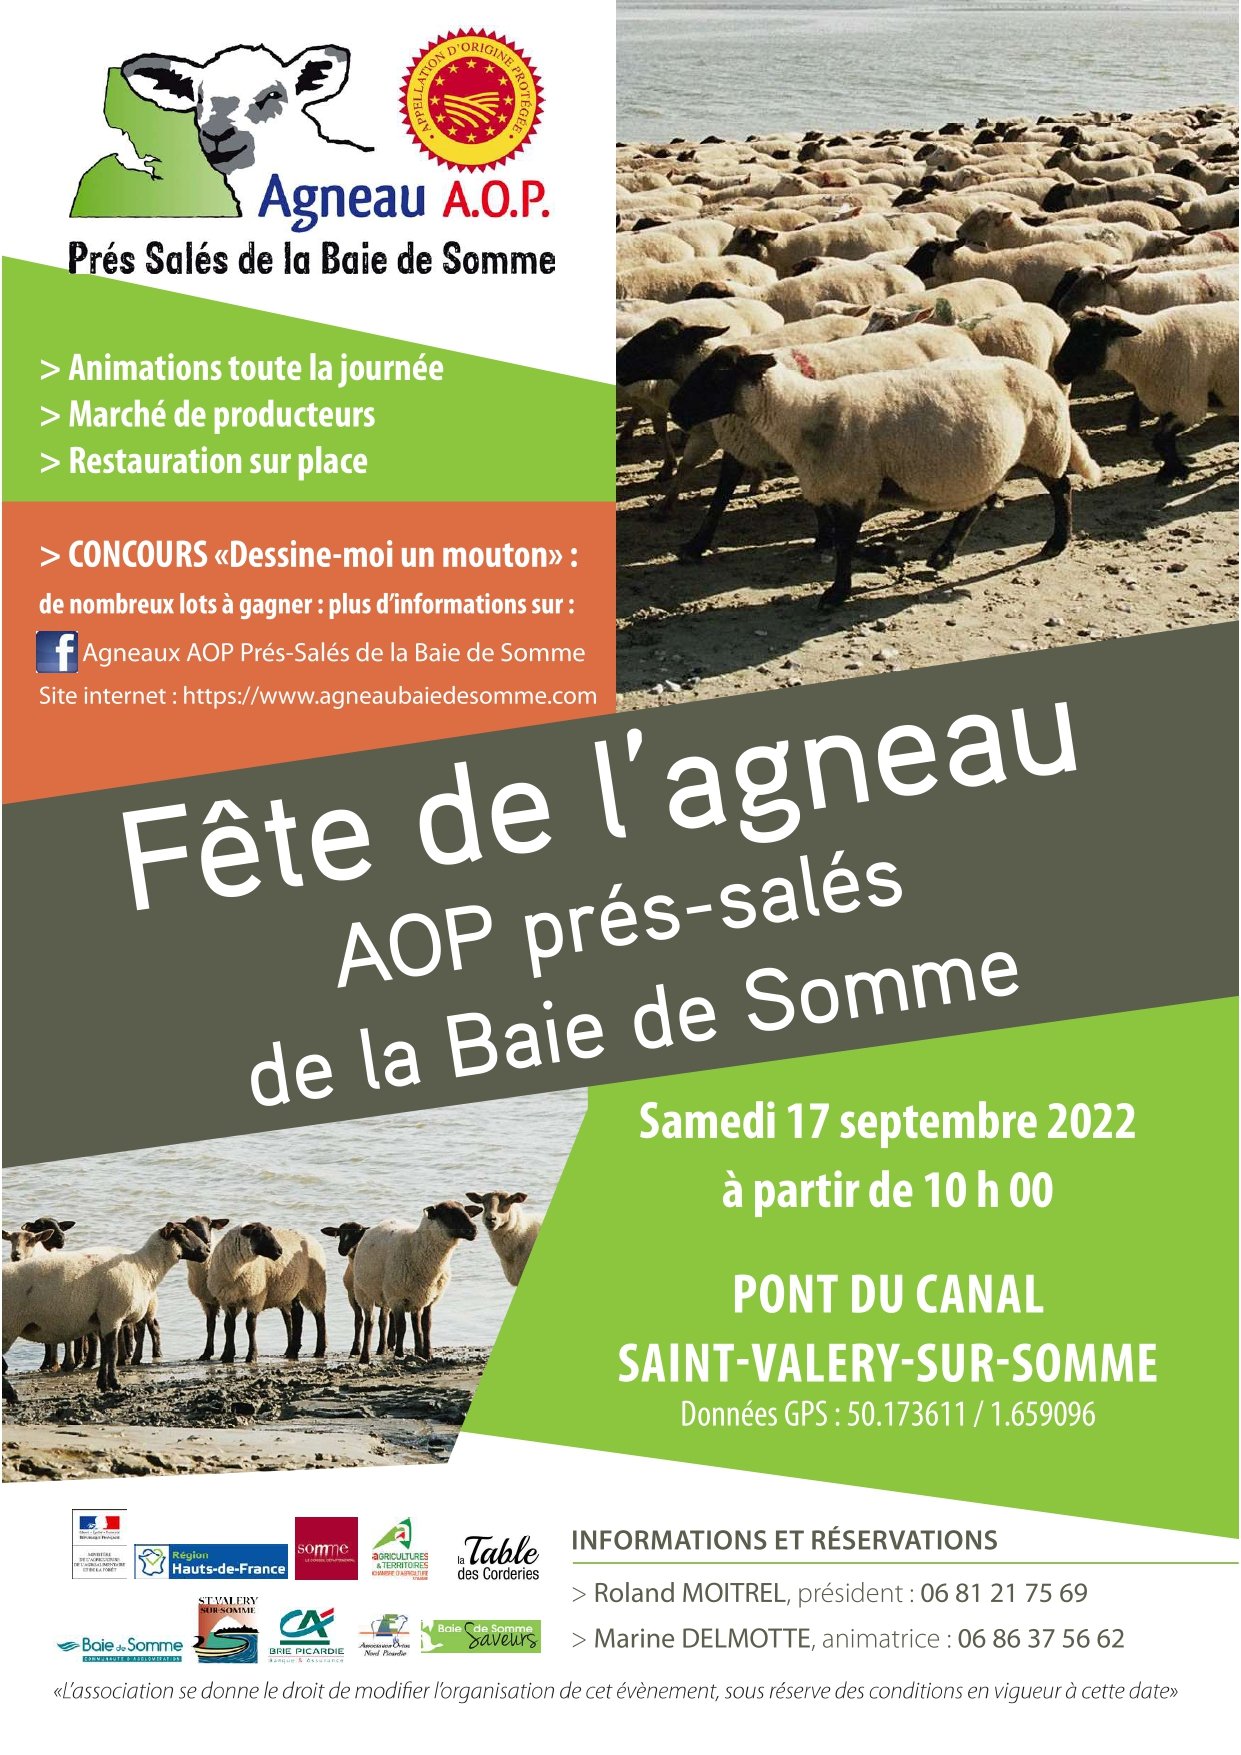 C'est la Fête de l’agneau AOP Prés-salés de la Baie de Somme, samedi 17 septembre 2022 à partir de 10 heures.